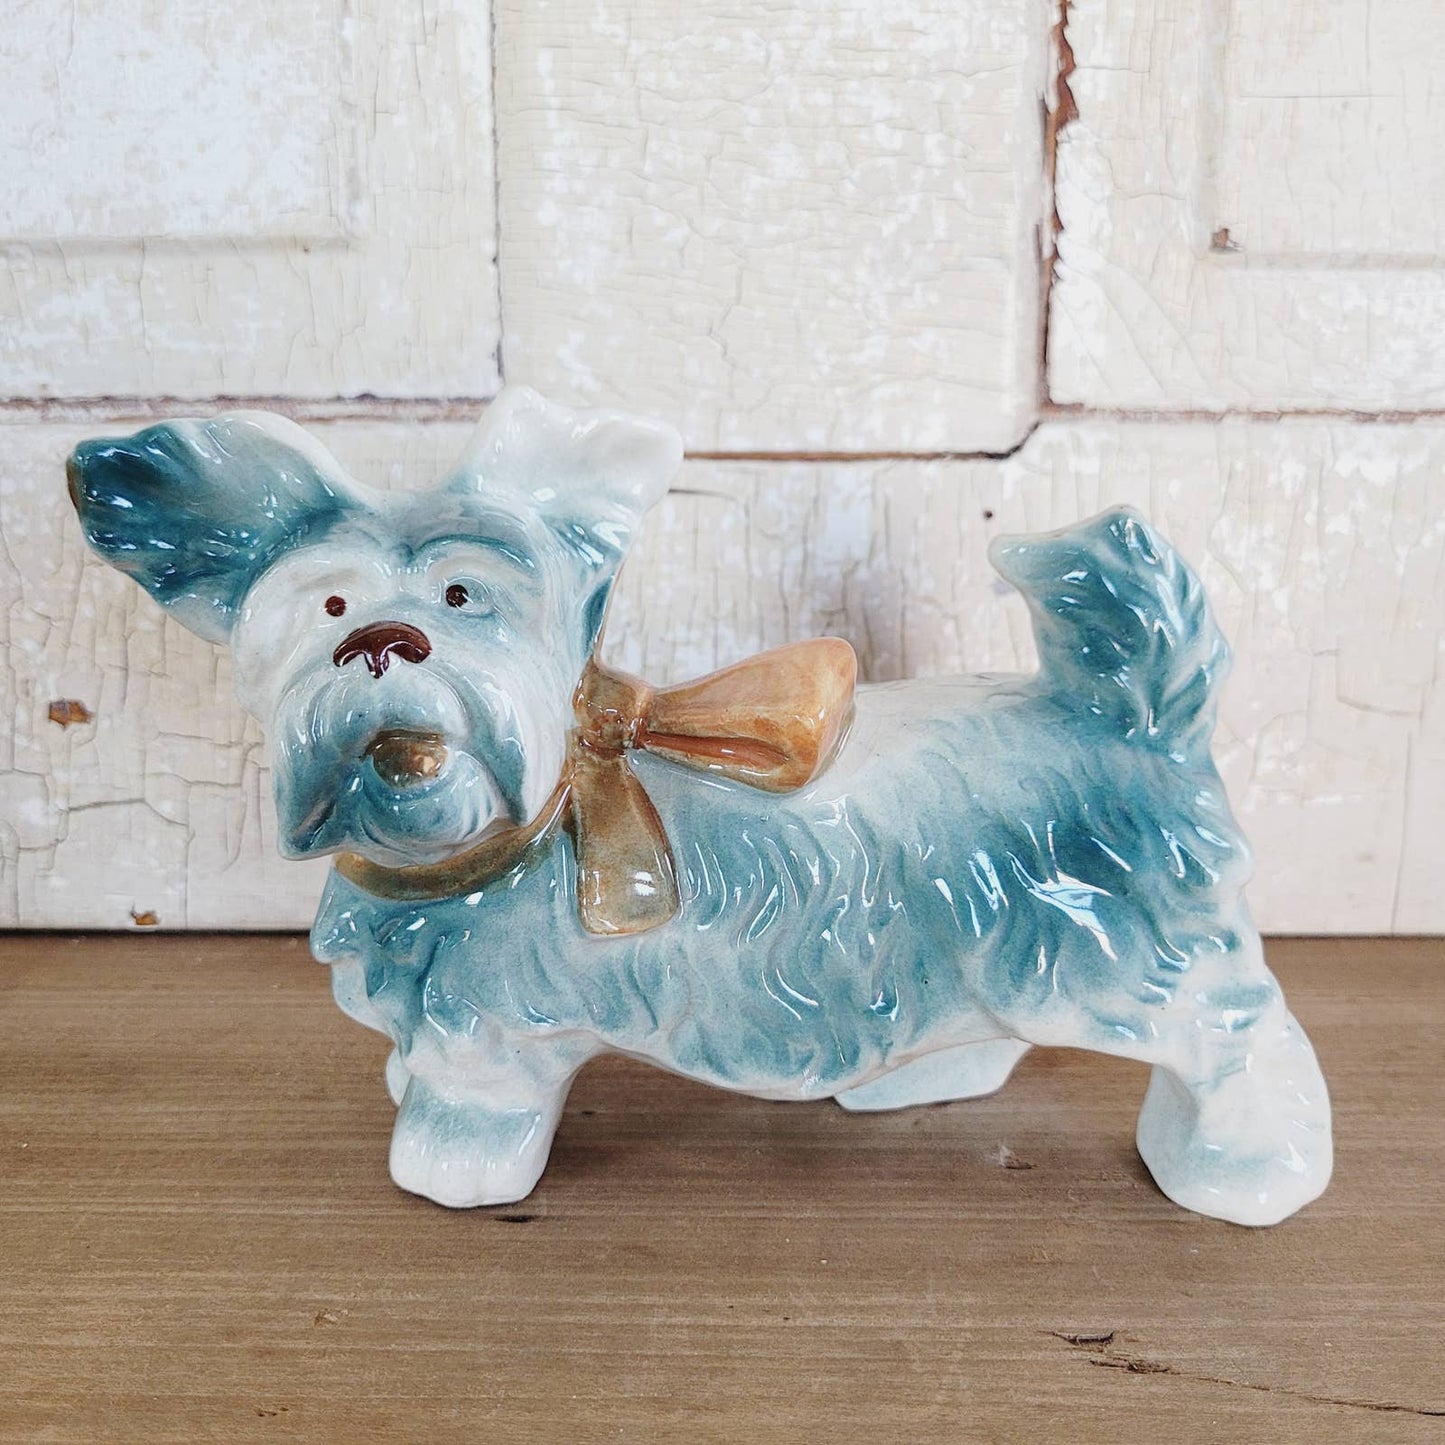 Vintage Japan Ceramic Terrier Dog Figurine